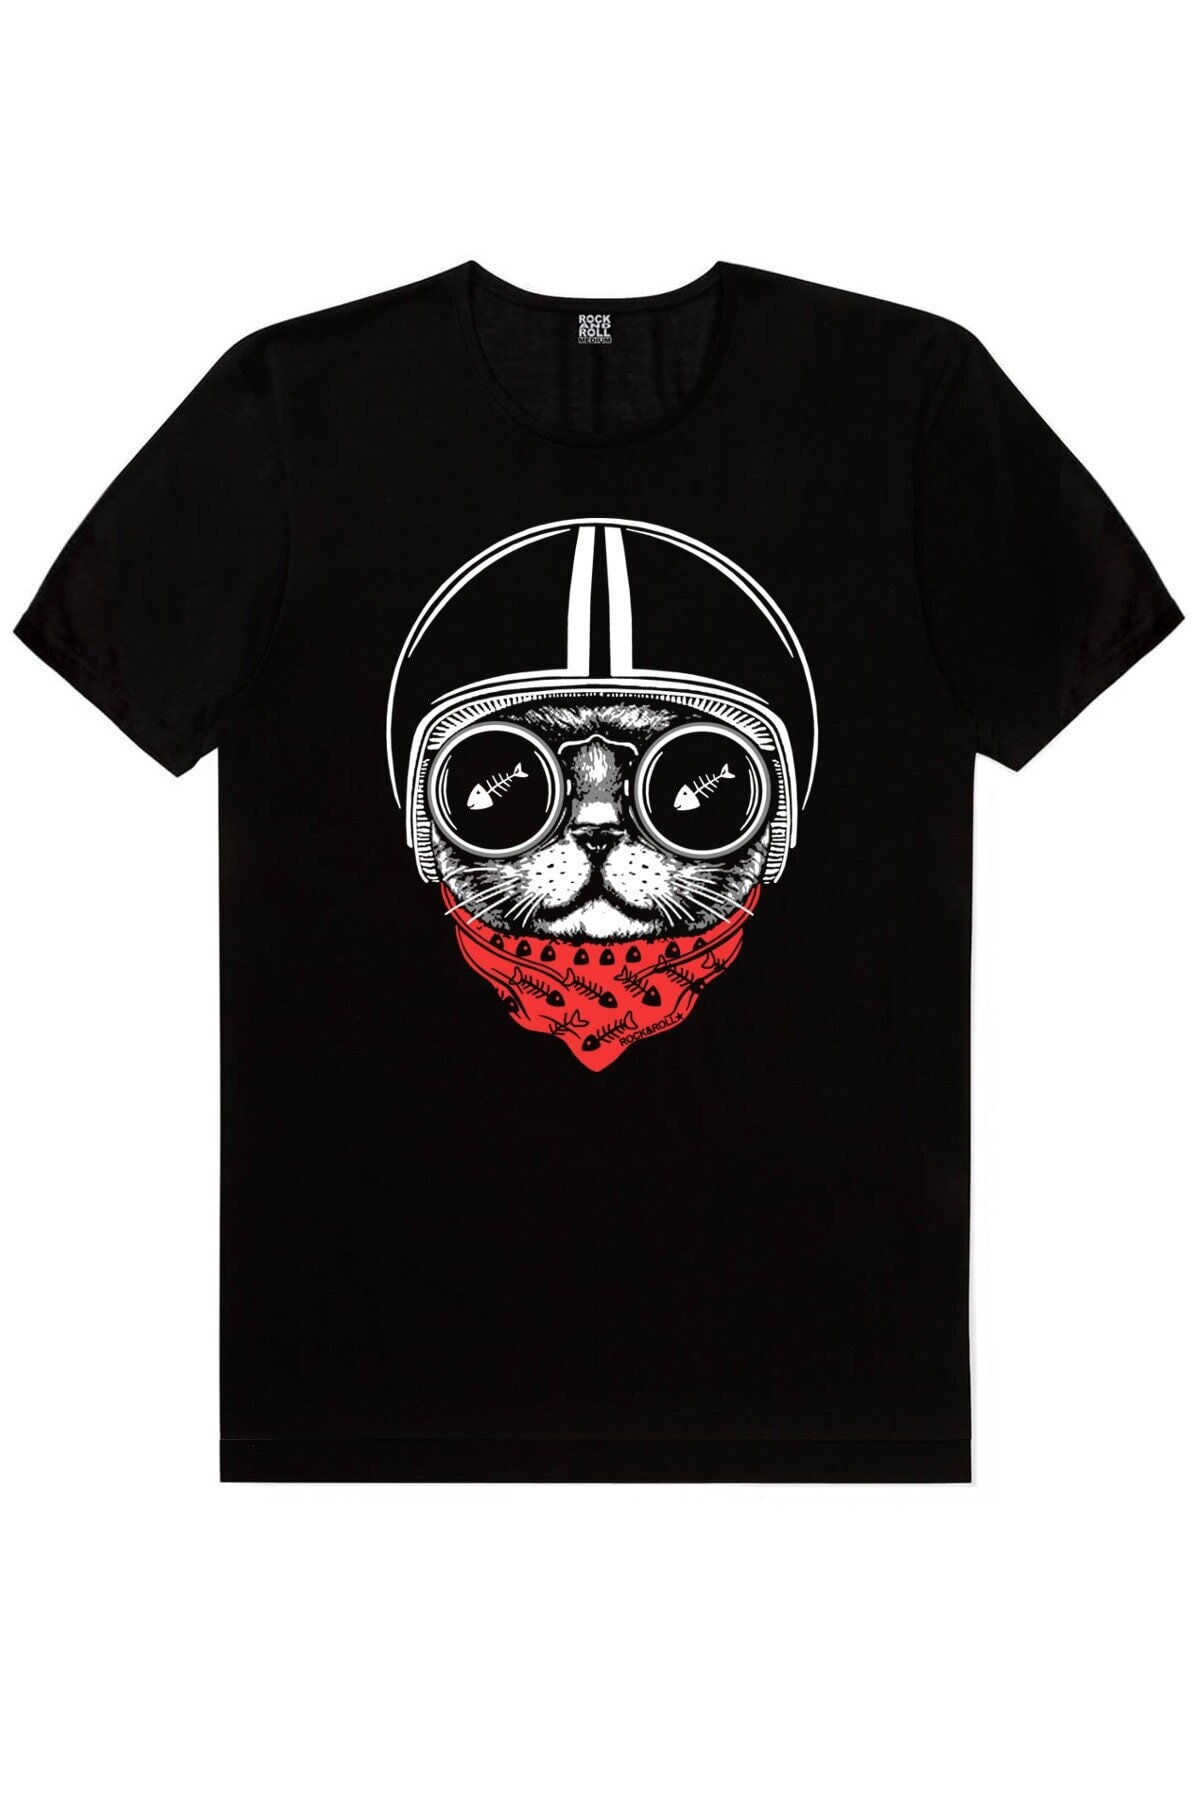 Dairede Kedi Kafası, Kasklı Kedi Erkek 2'li Eko Paket T-shirt